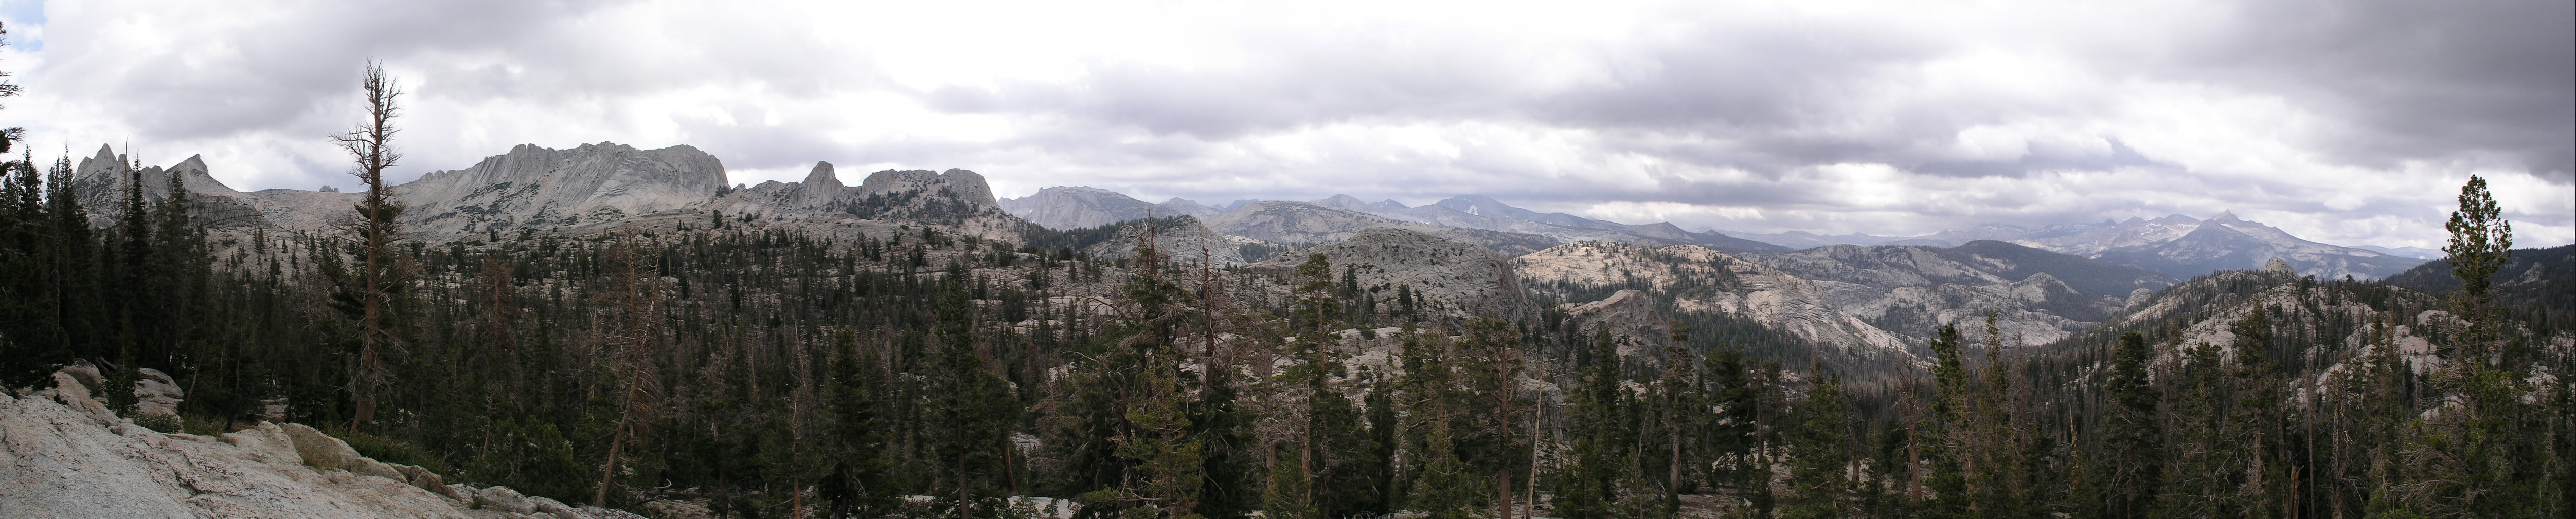 Granite Park Chalet panorama